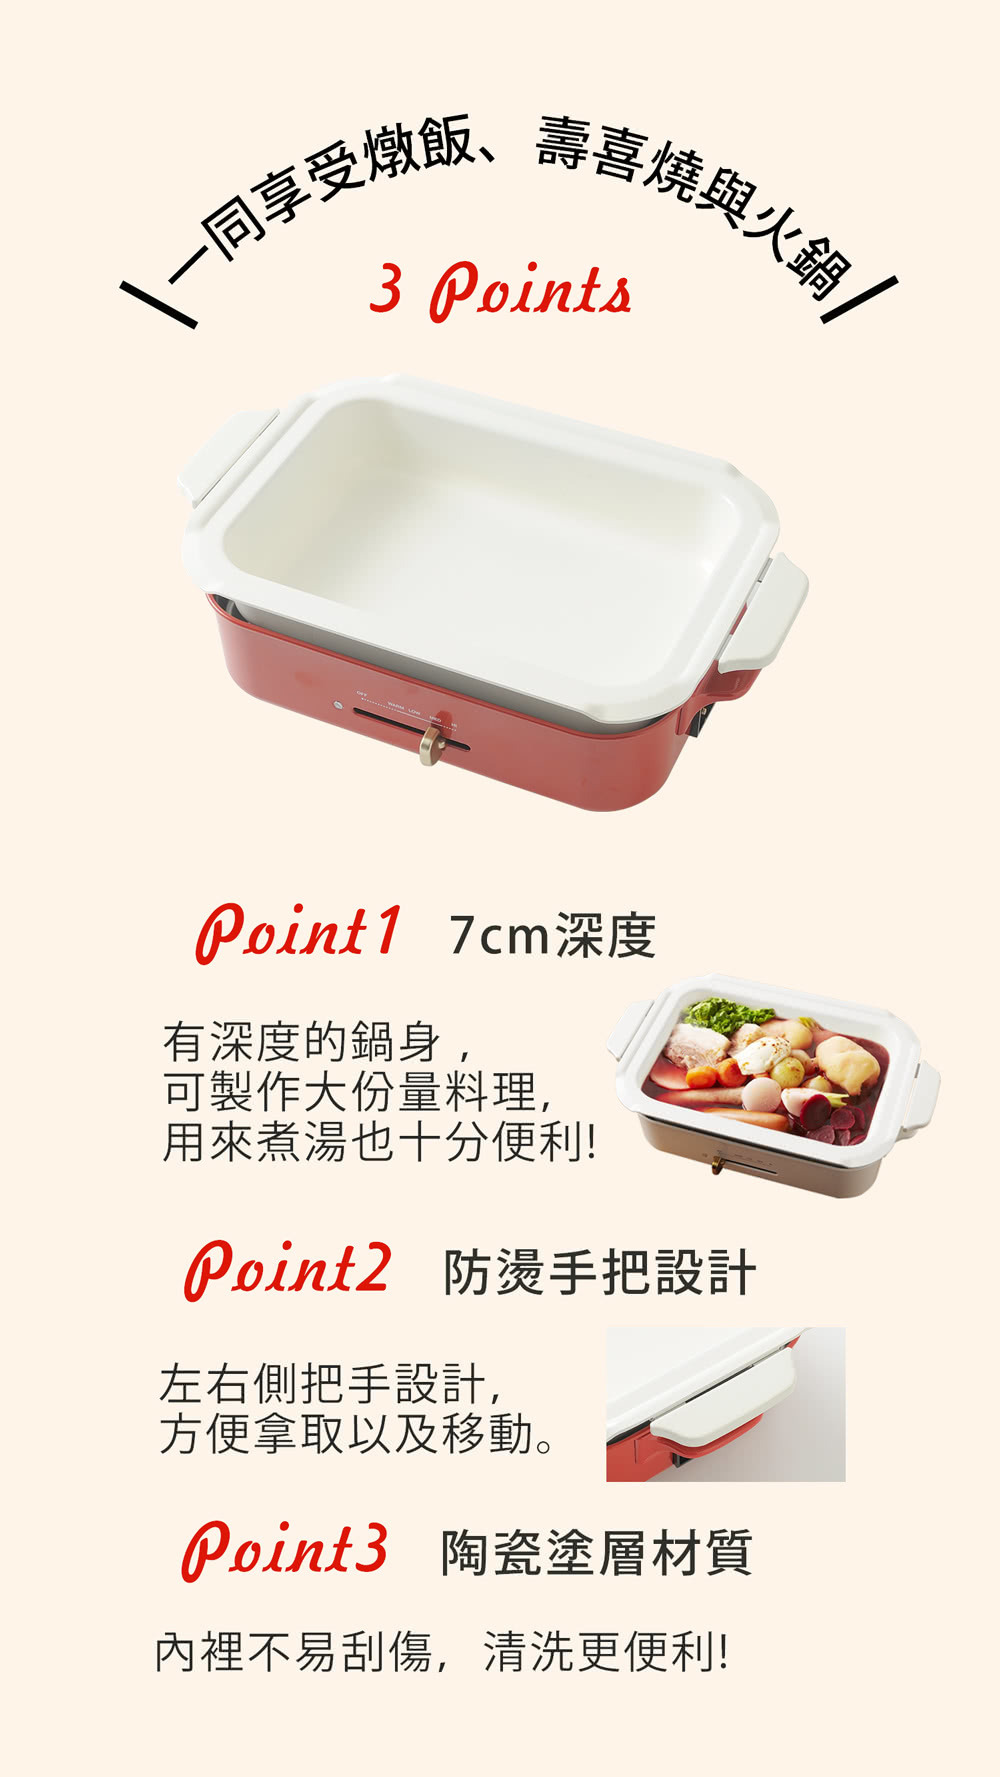 不管是燉飯、壽喜燒與火鍋使用BOE021專用的深鍋都可以製作!